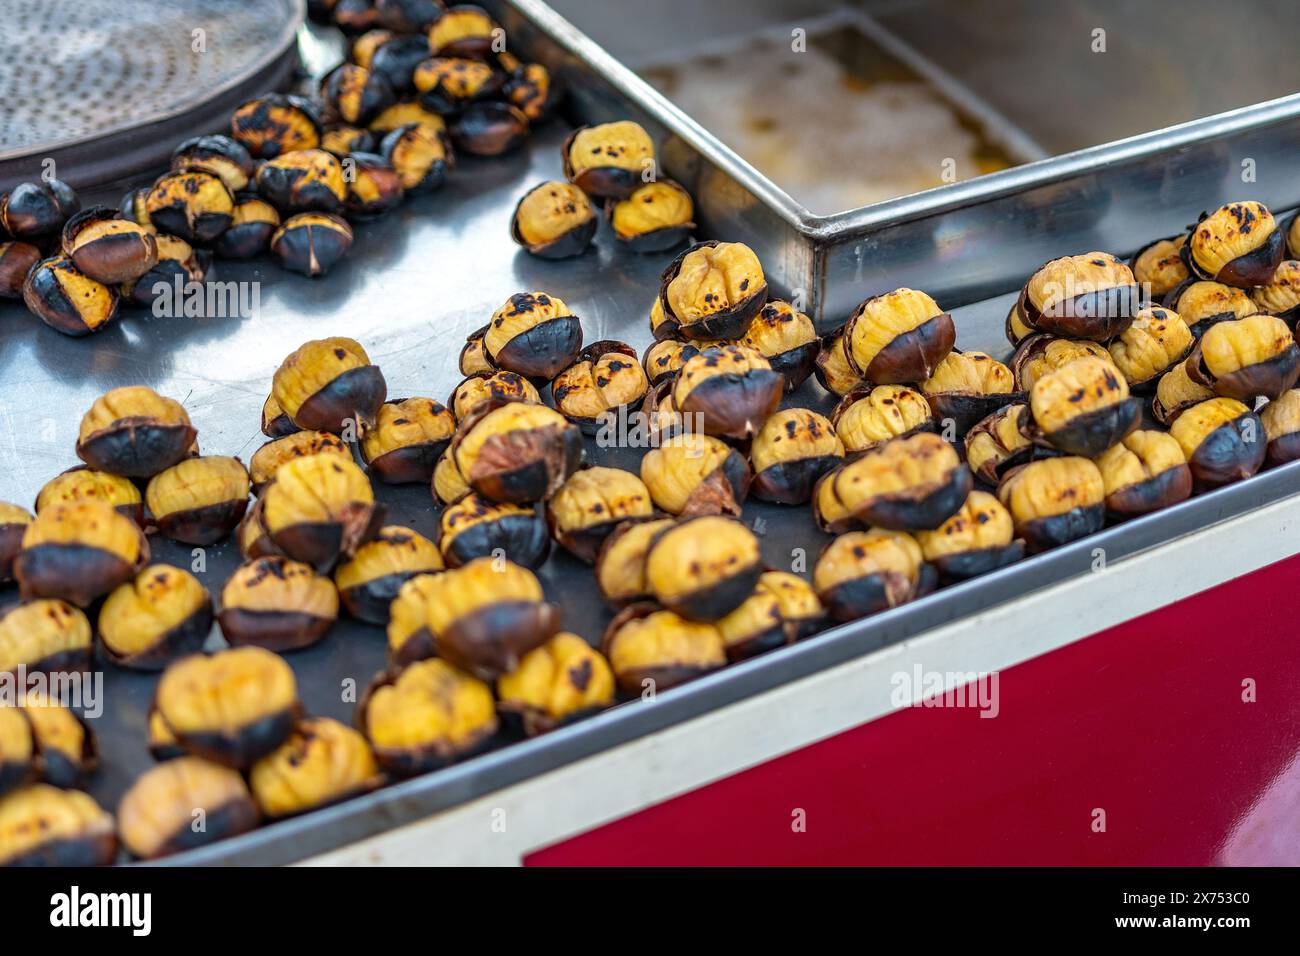 Châtaignes frites dans la rue d'Istanbul, Turquie. Le châtaignier est une cuisine de rue turque traditionnelle. Banque D'Images